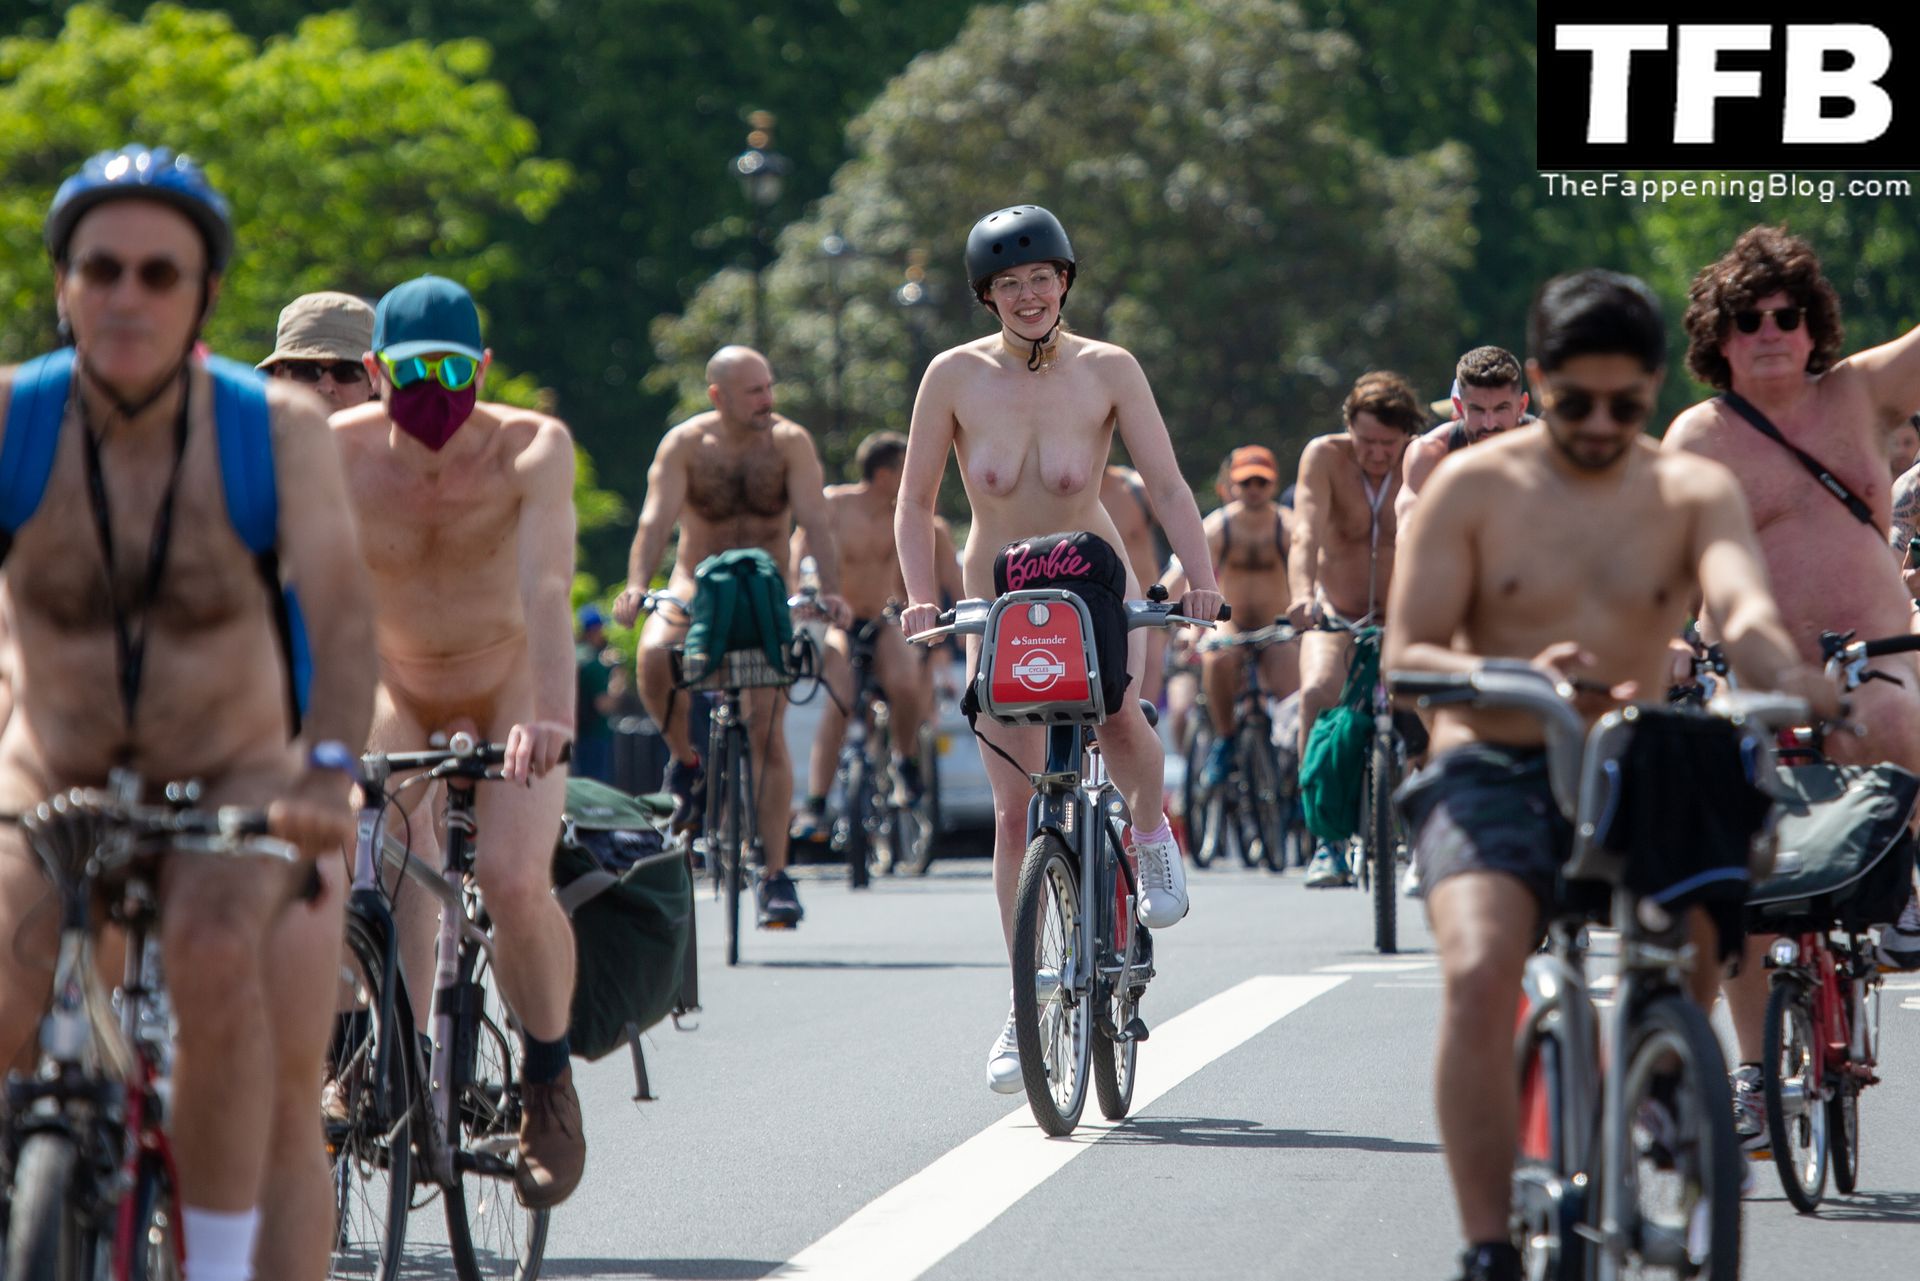 The-2022-World-Naked-Bike-Ride-The-Fappening-Blog-37.jpg